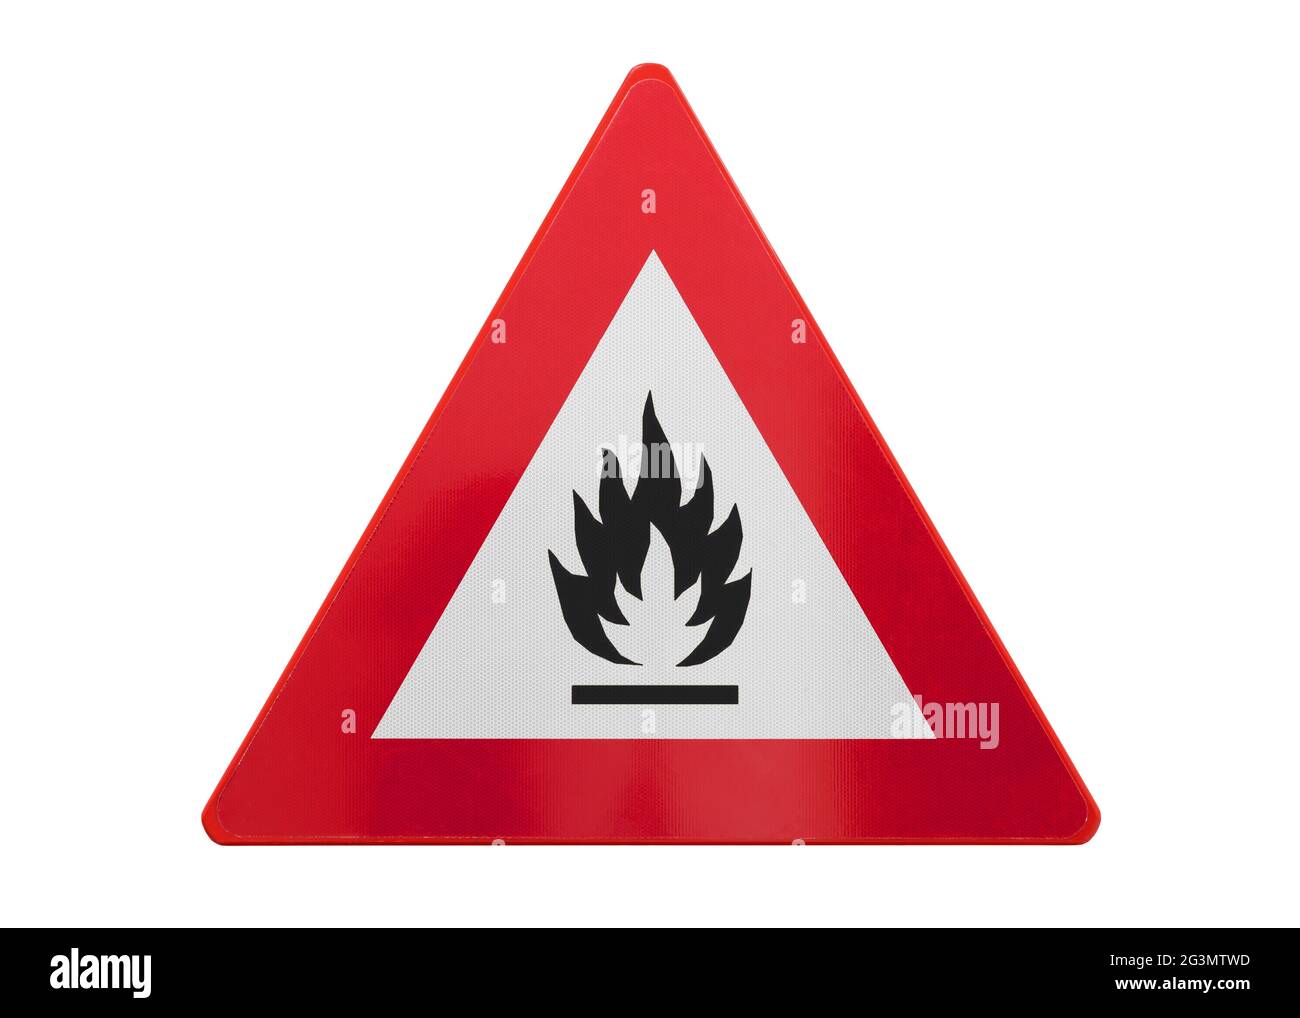 Decor fier stock photo. Image of dangerous, danger, fiery - 20940556